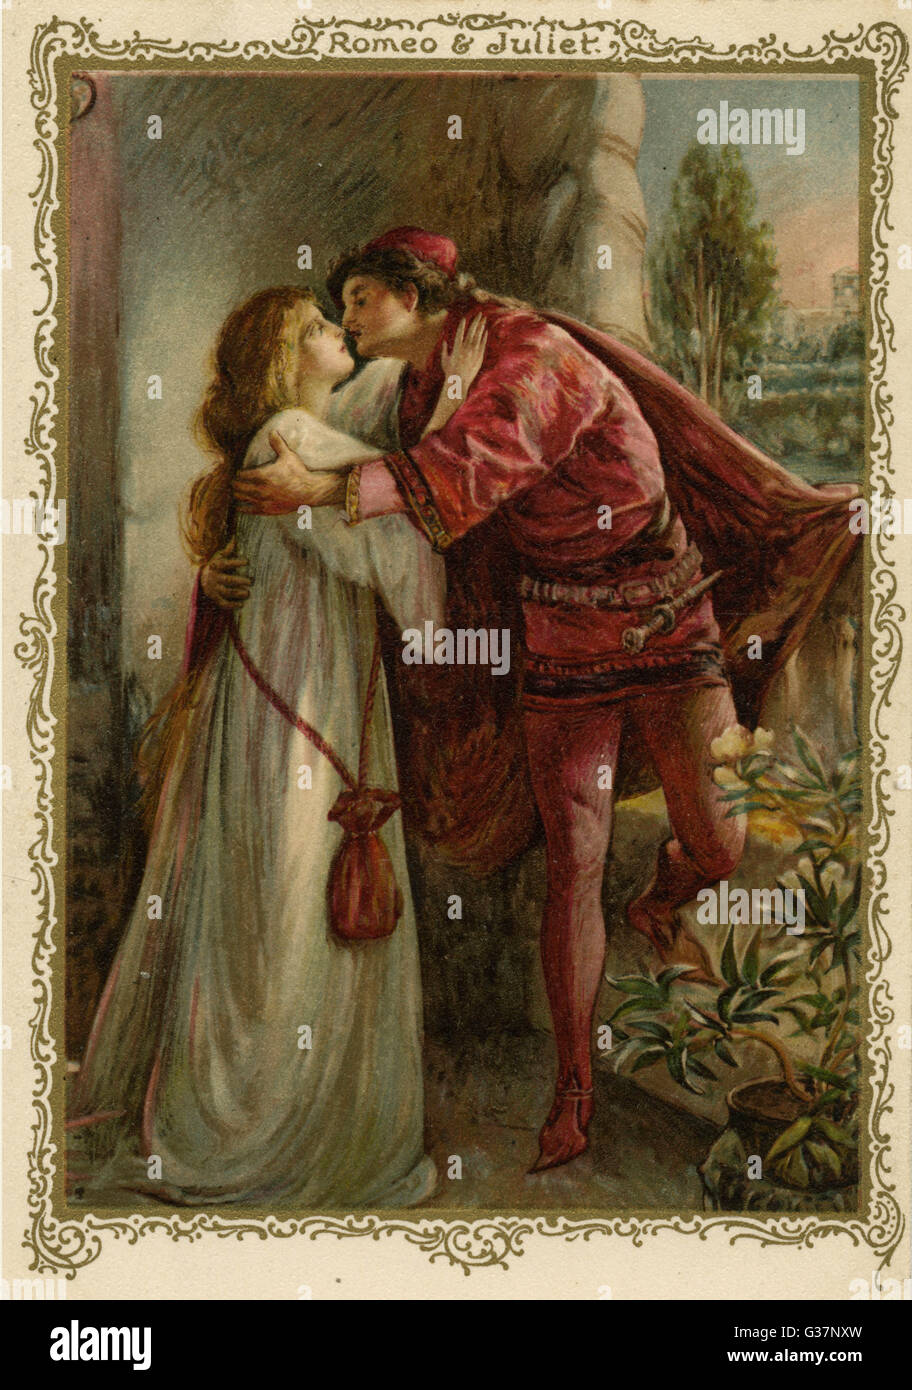 Romeo and juliet date fotografías e imágenes de alta resolución Alamy